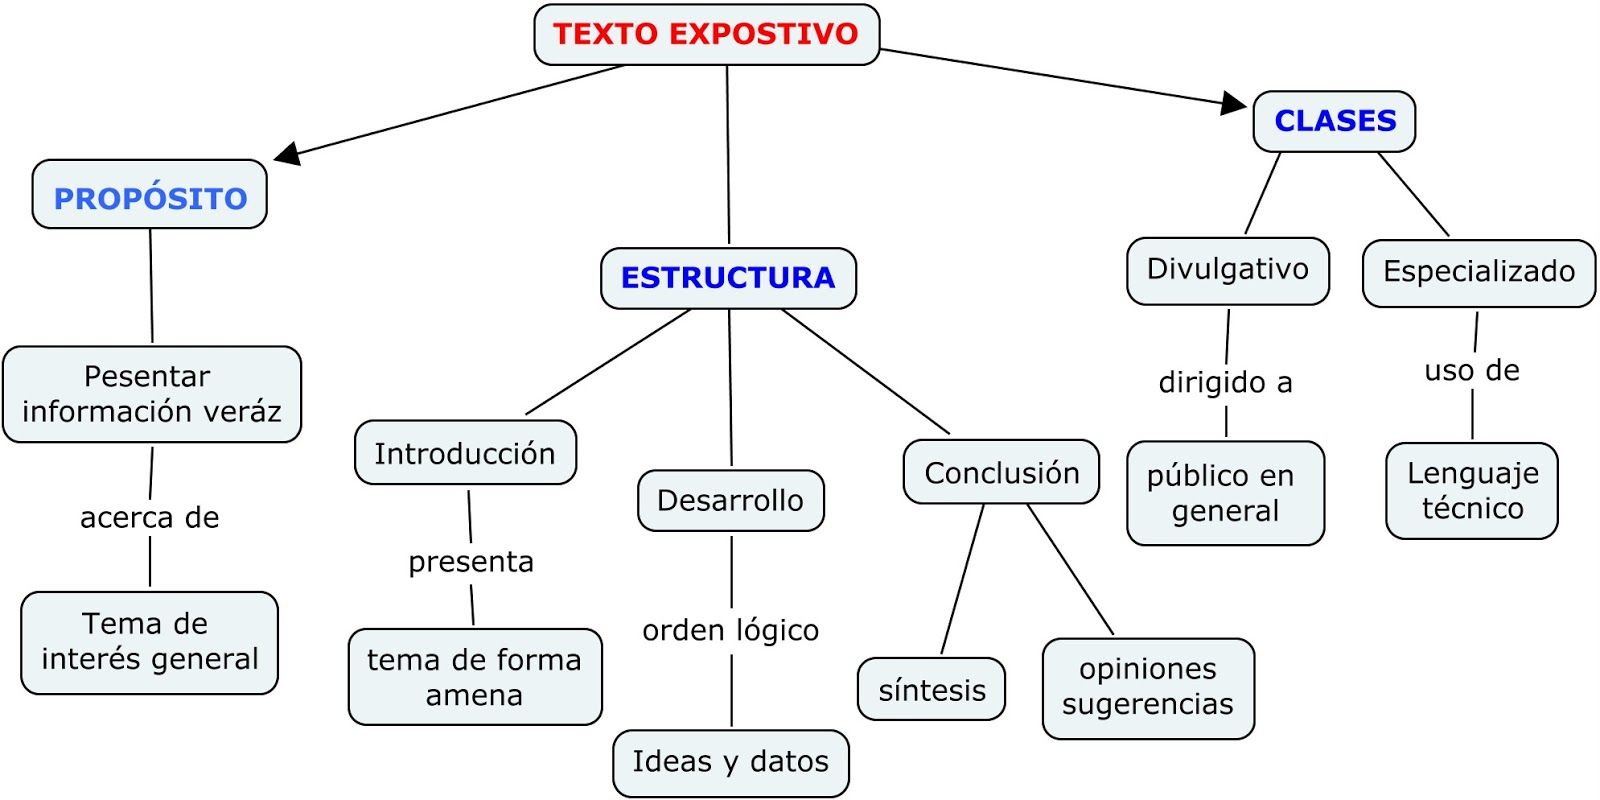 Textos Expositivos su contenido y estructura formal.